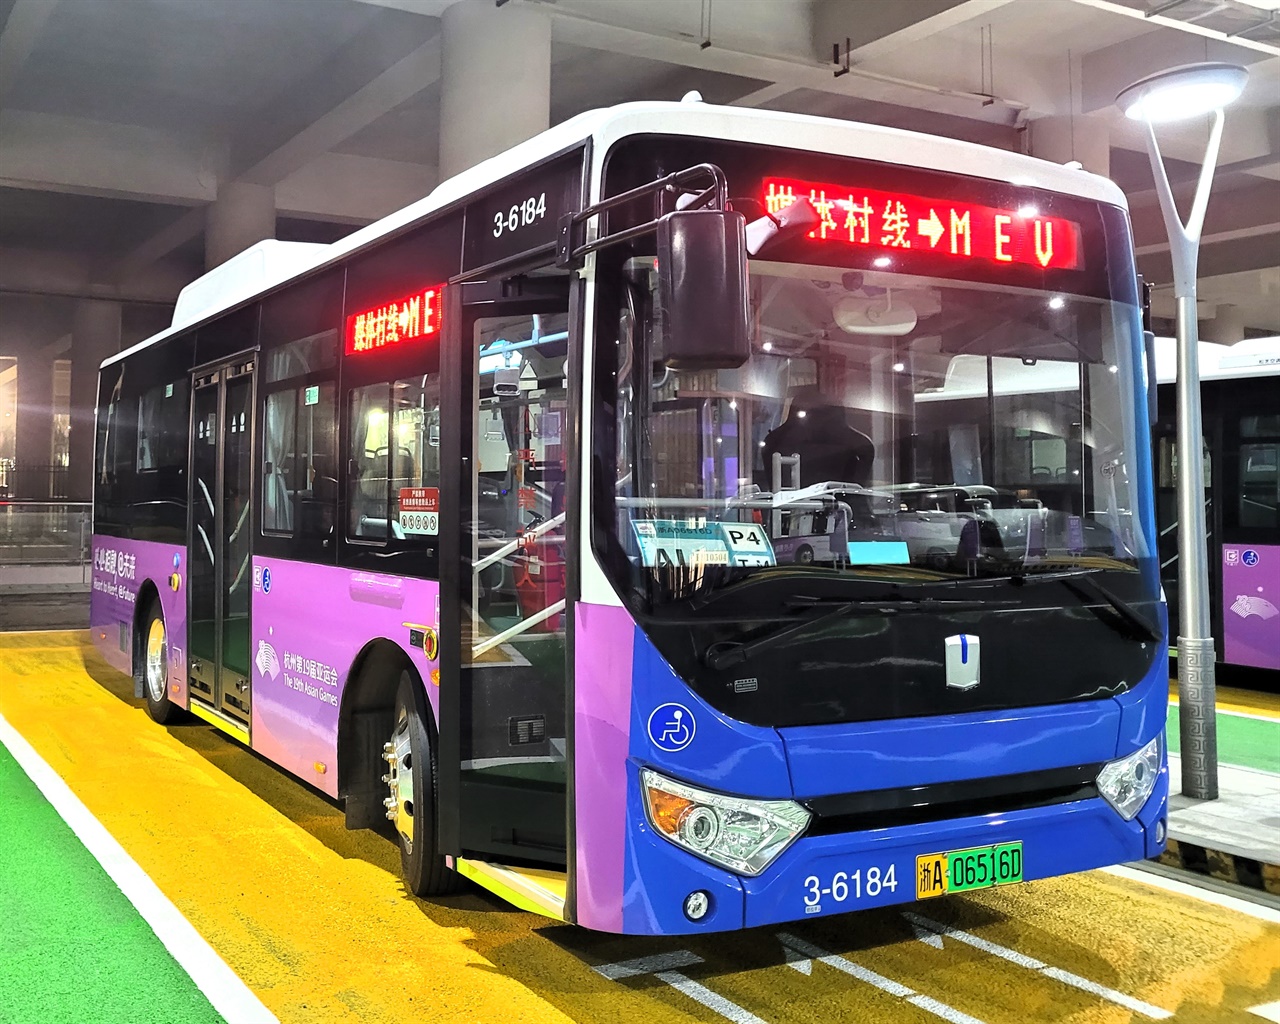 항저우 아시안게임의 주요 장소를 잇는 셔틀버스. 특히 전기버스의 경우 한국에도 있는 중국 메이커의 전기버스와 대동소이하다.